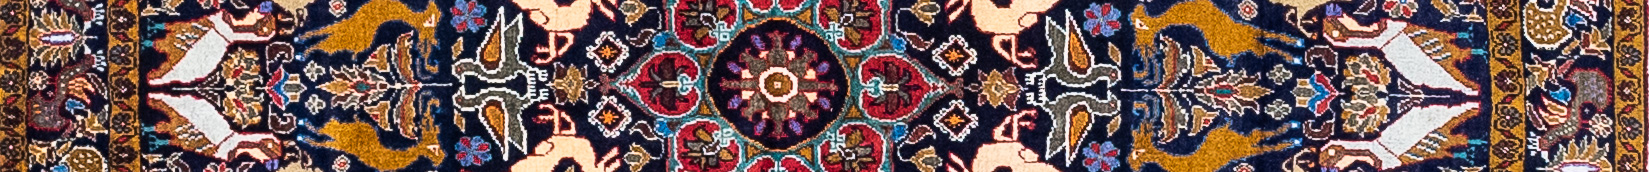 Balouch Persian Carpet Rug N1Carpet Canada Montreal Tapis Persan 450